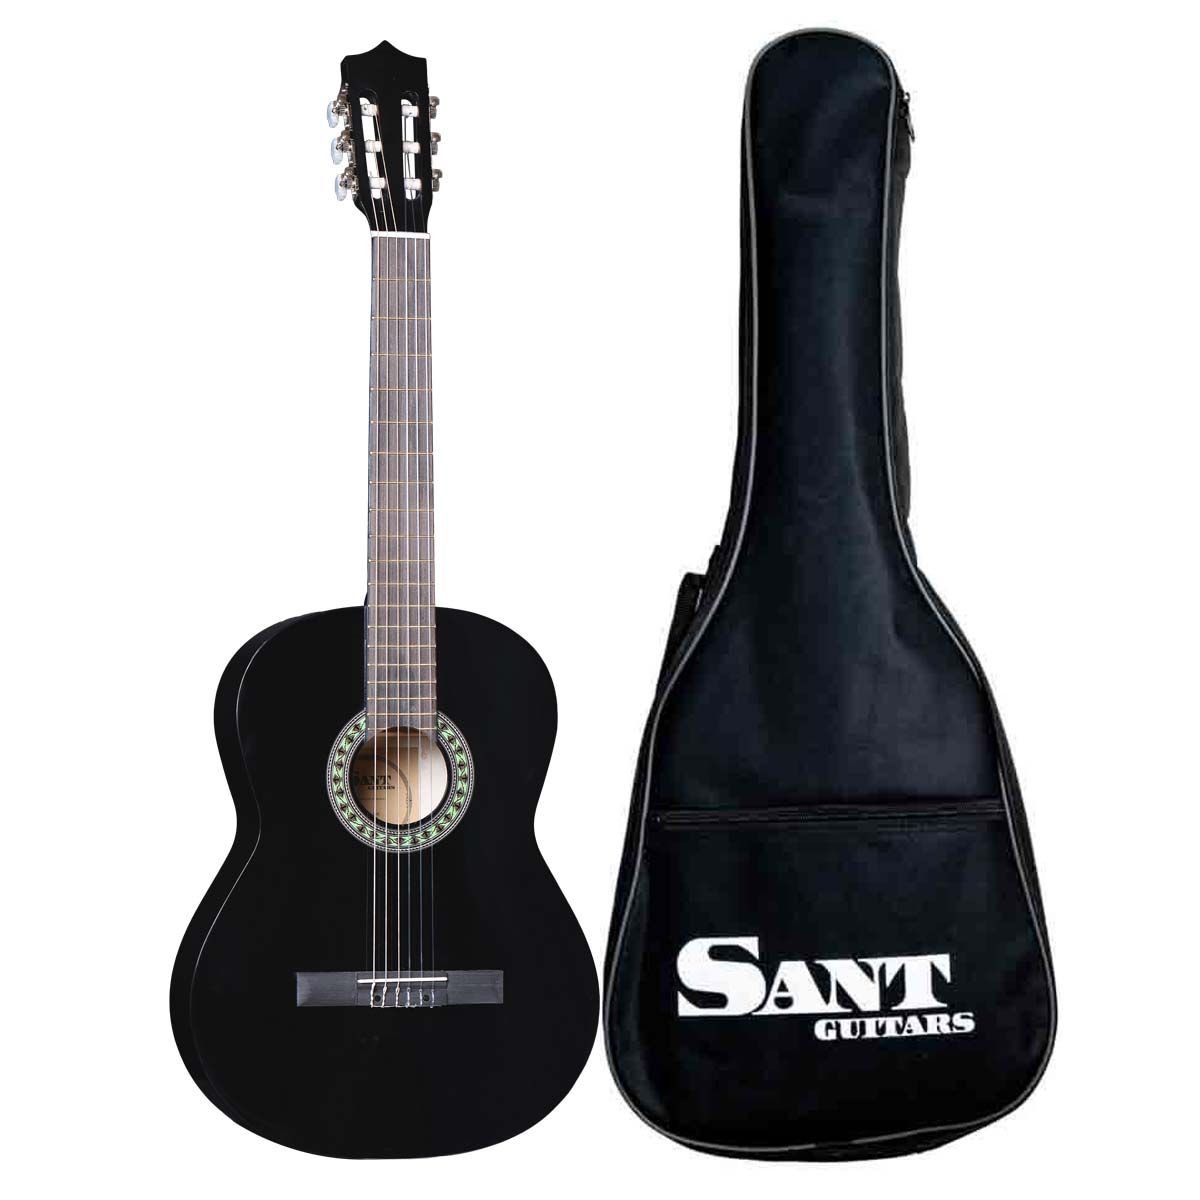 Køb Spansk Guitar med taske - Sant CL-50-BK